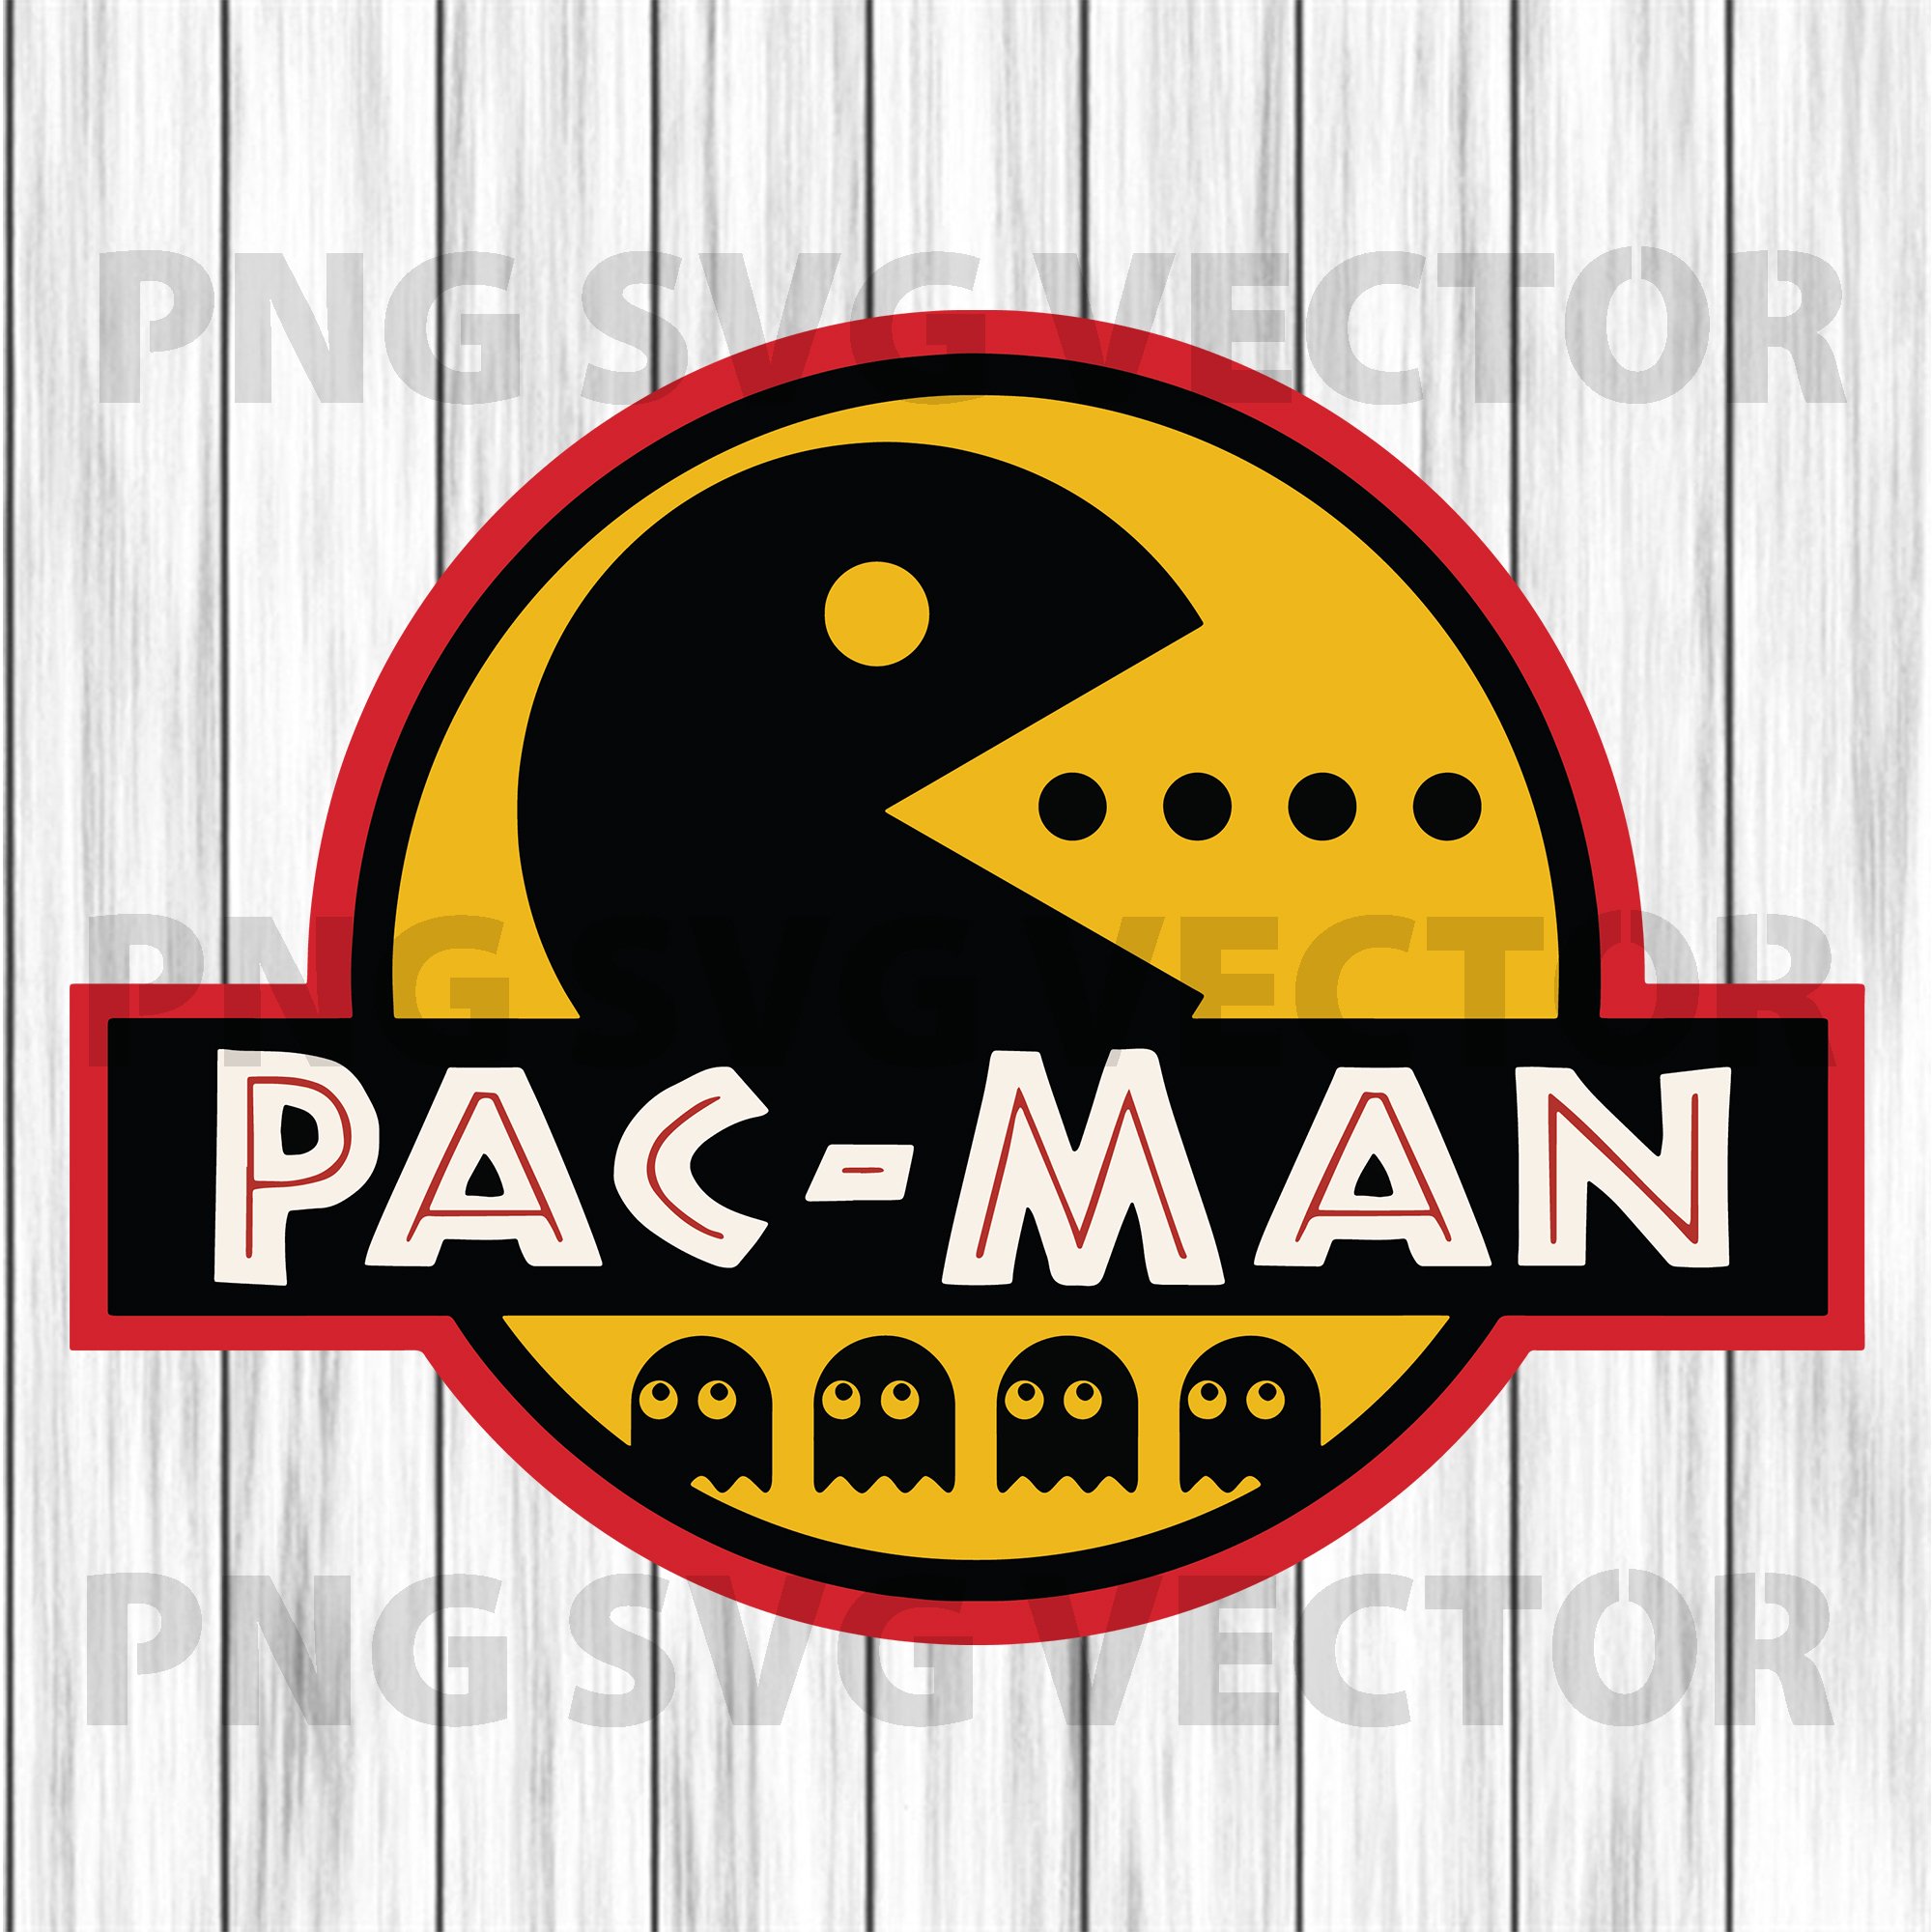 Pacman Svg File Pacman Png File,Pacman Cricut Fİle Cut File Pacman SVG for Cricut File,Pacman design